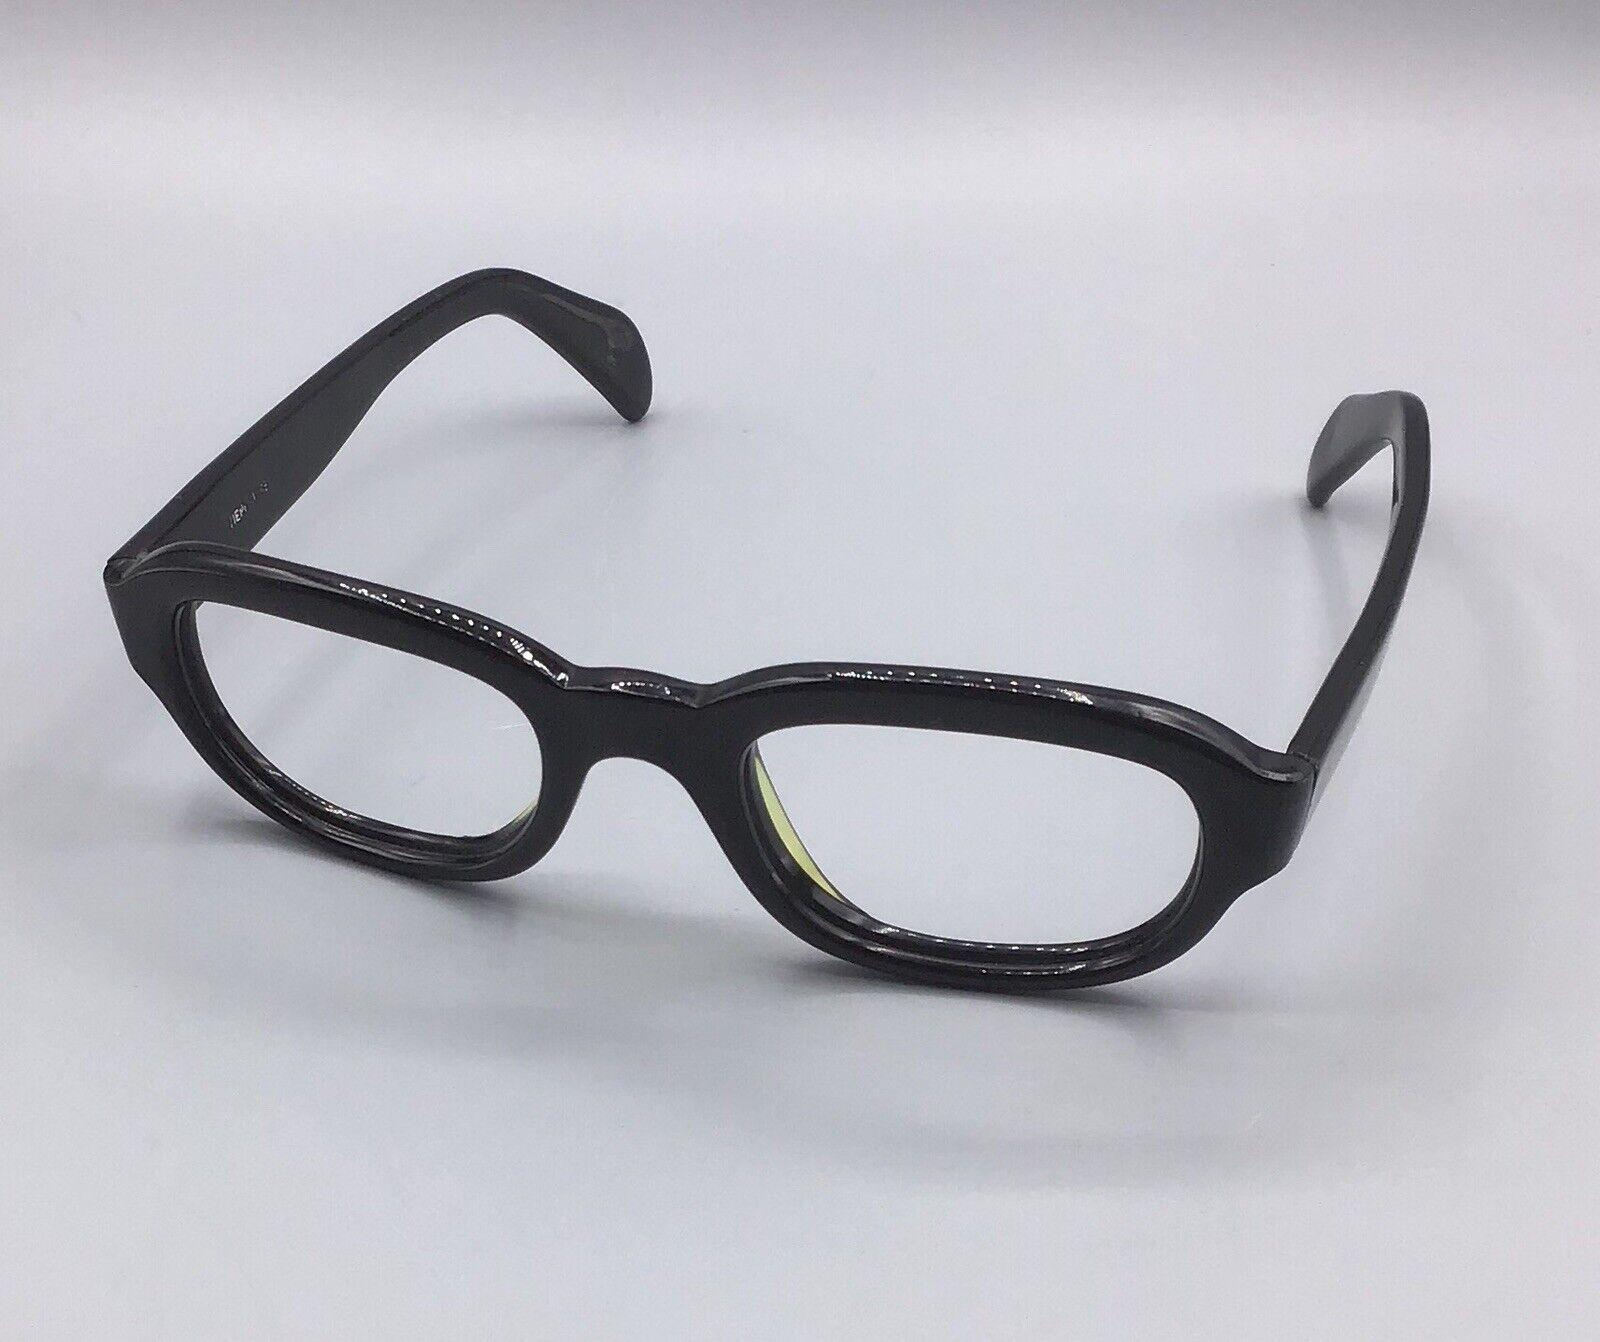 ViennaLine eyewear occhiale vintage brillen lunettes 140-5 1/2 60s frame